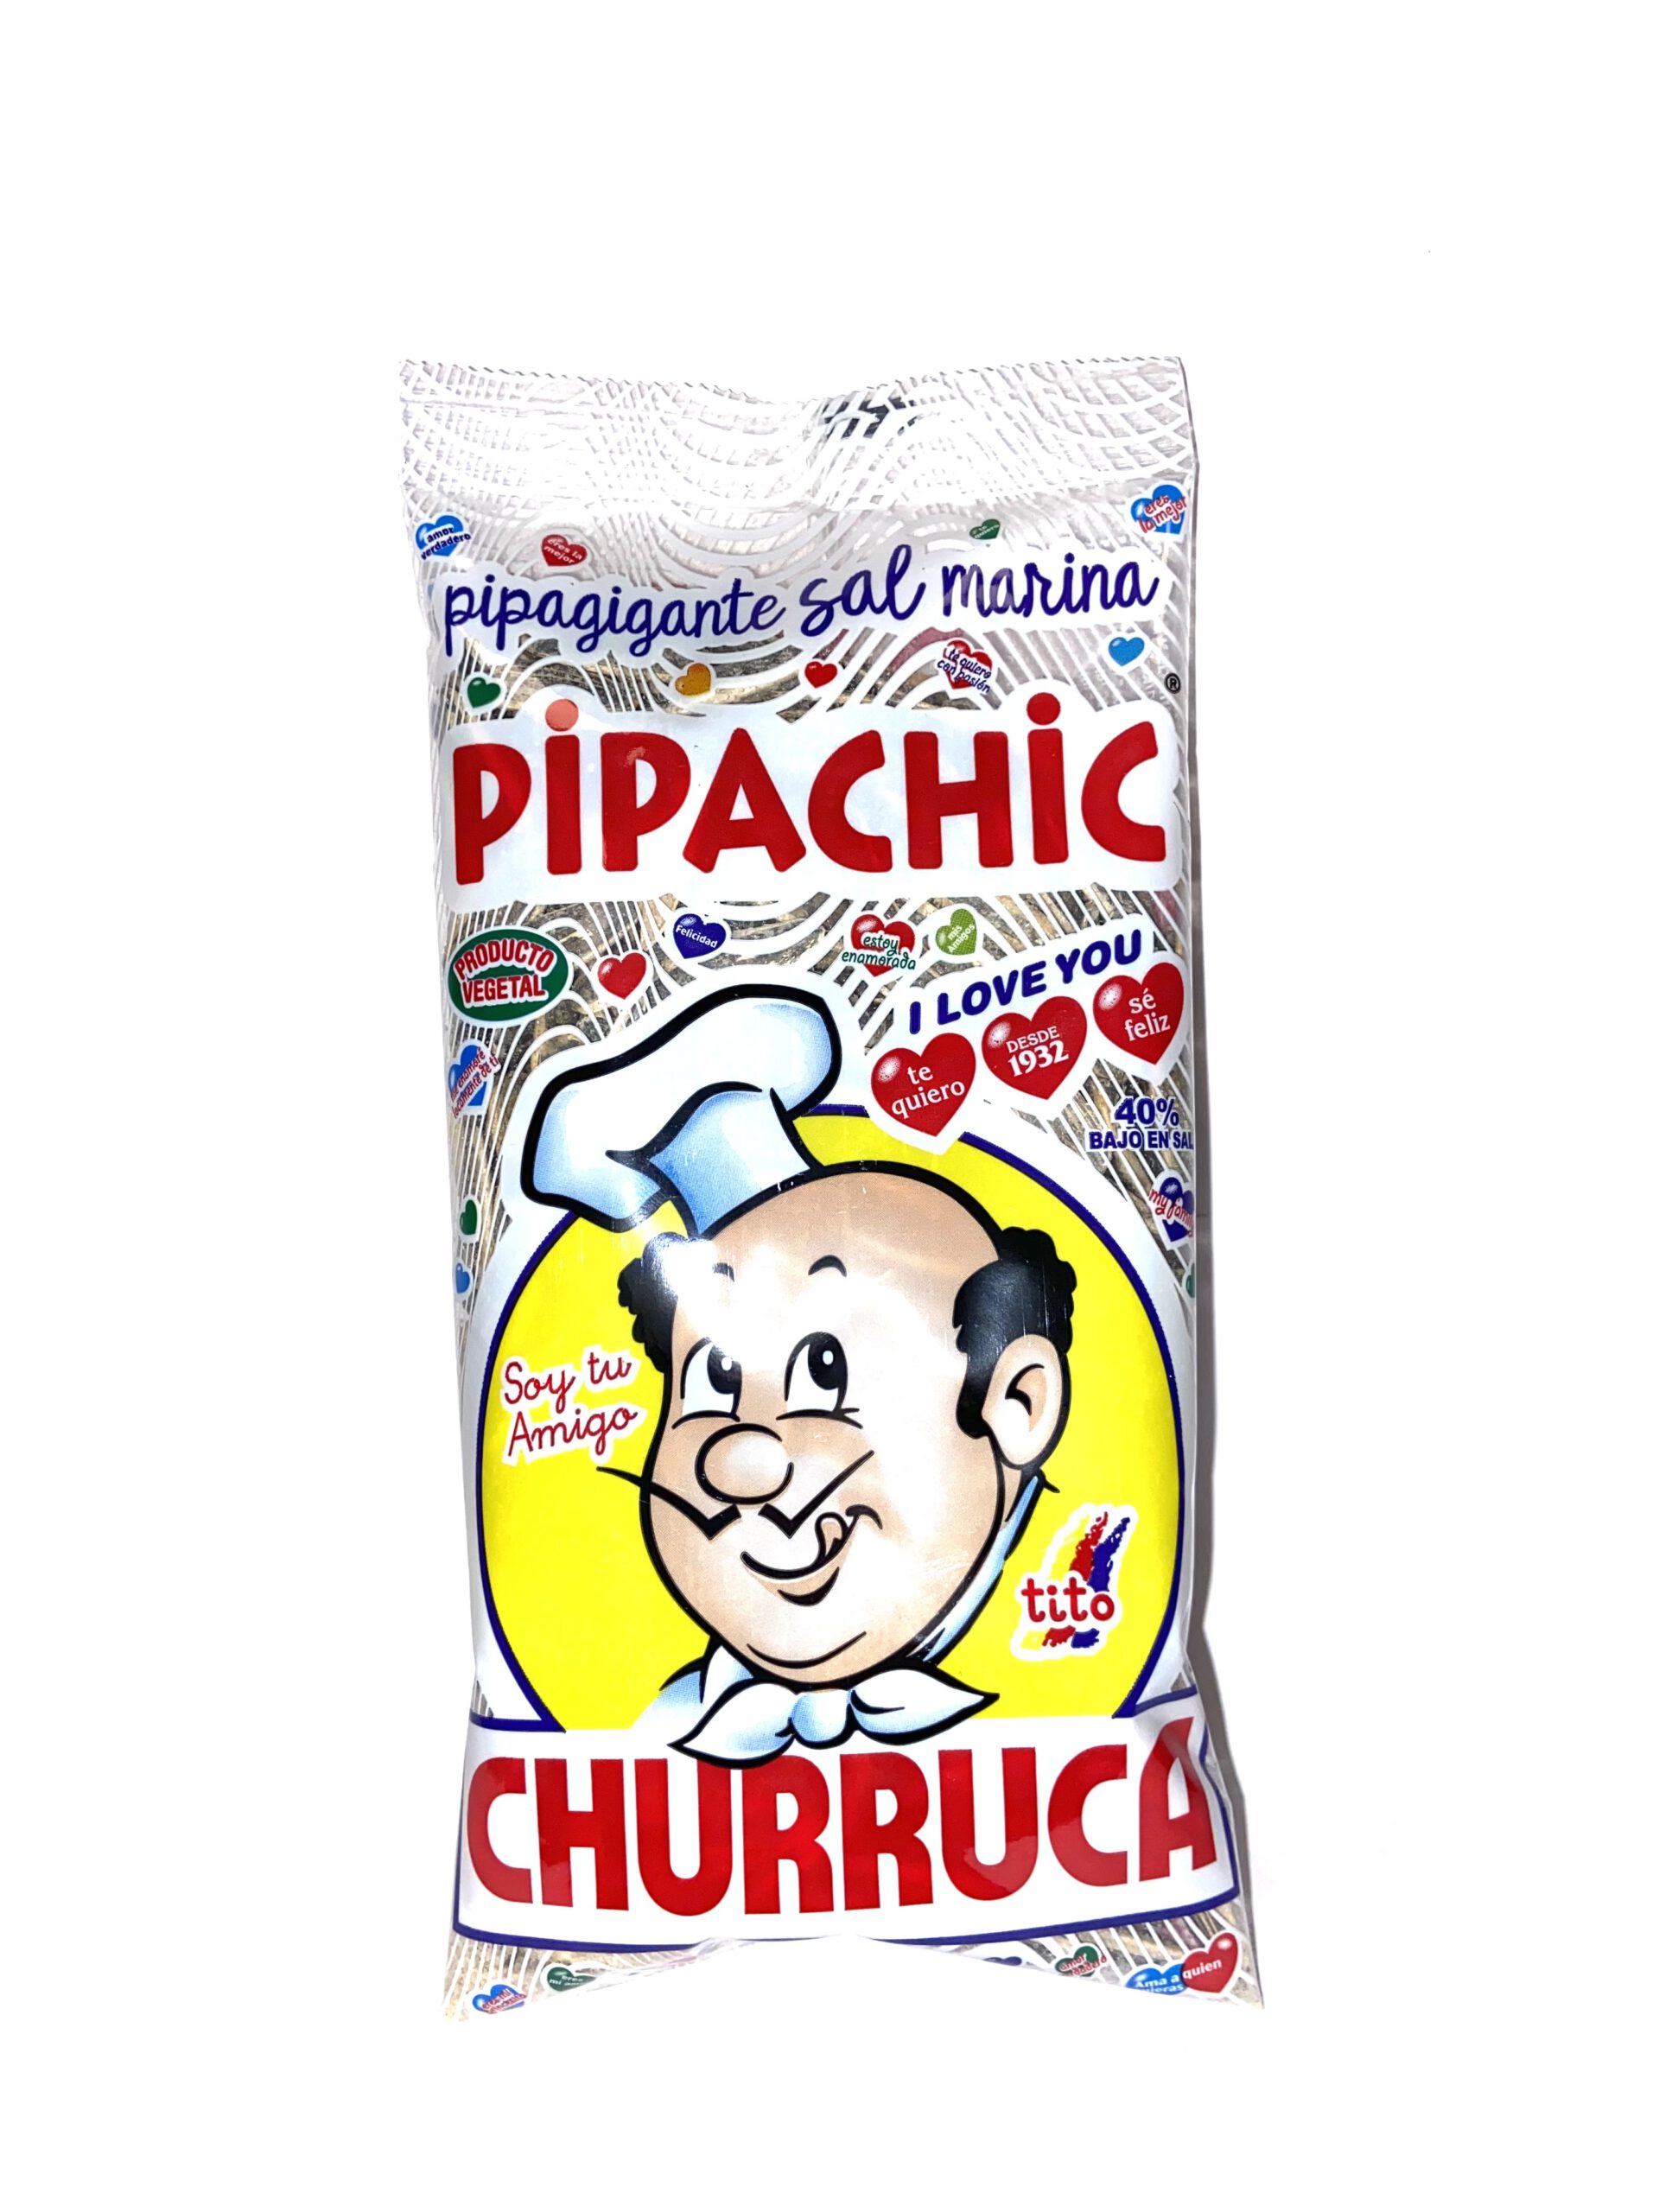 Pipachic Churruca 100g